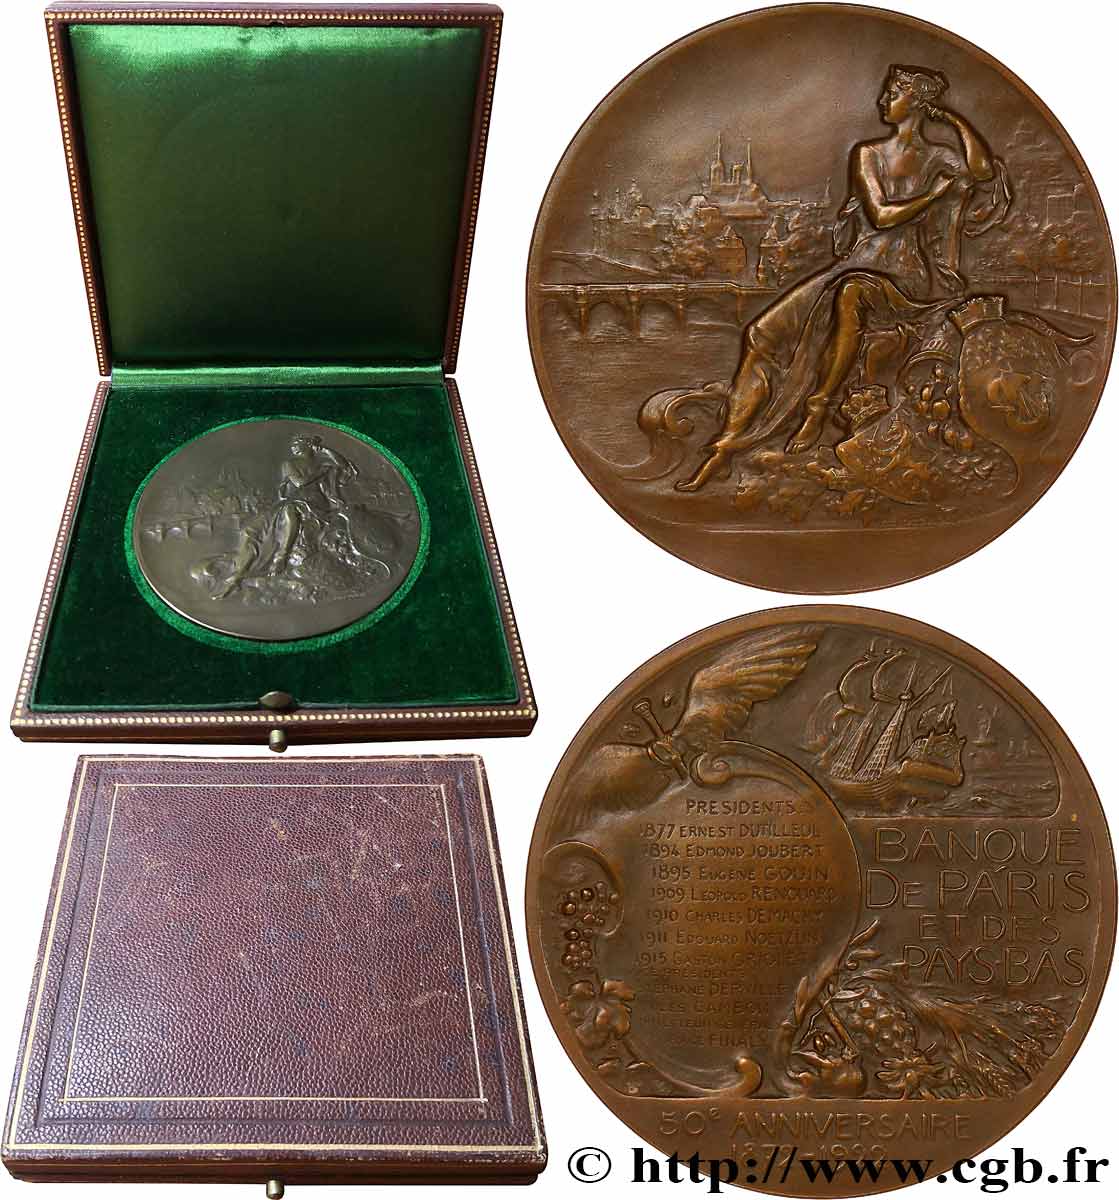 III REPUBLIC Médaille, Banque de Paris et des Pays-Bas, 50e anniversaire AU